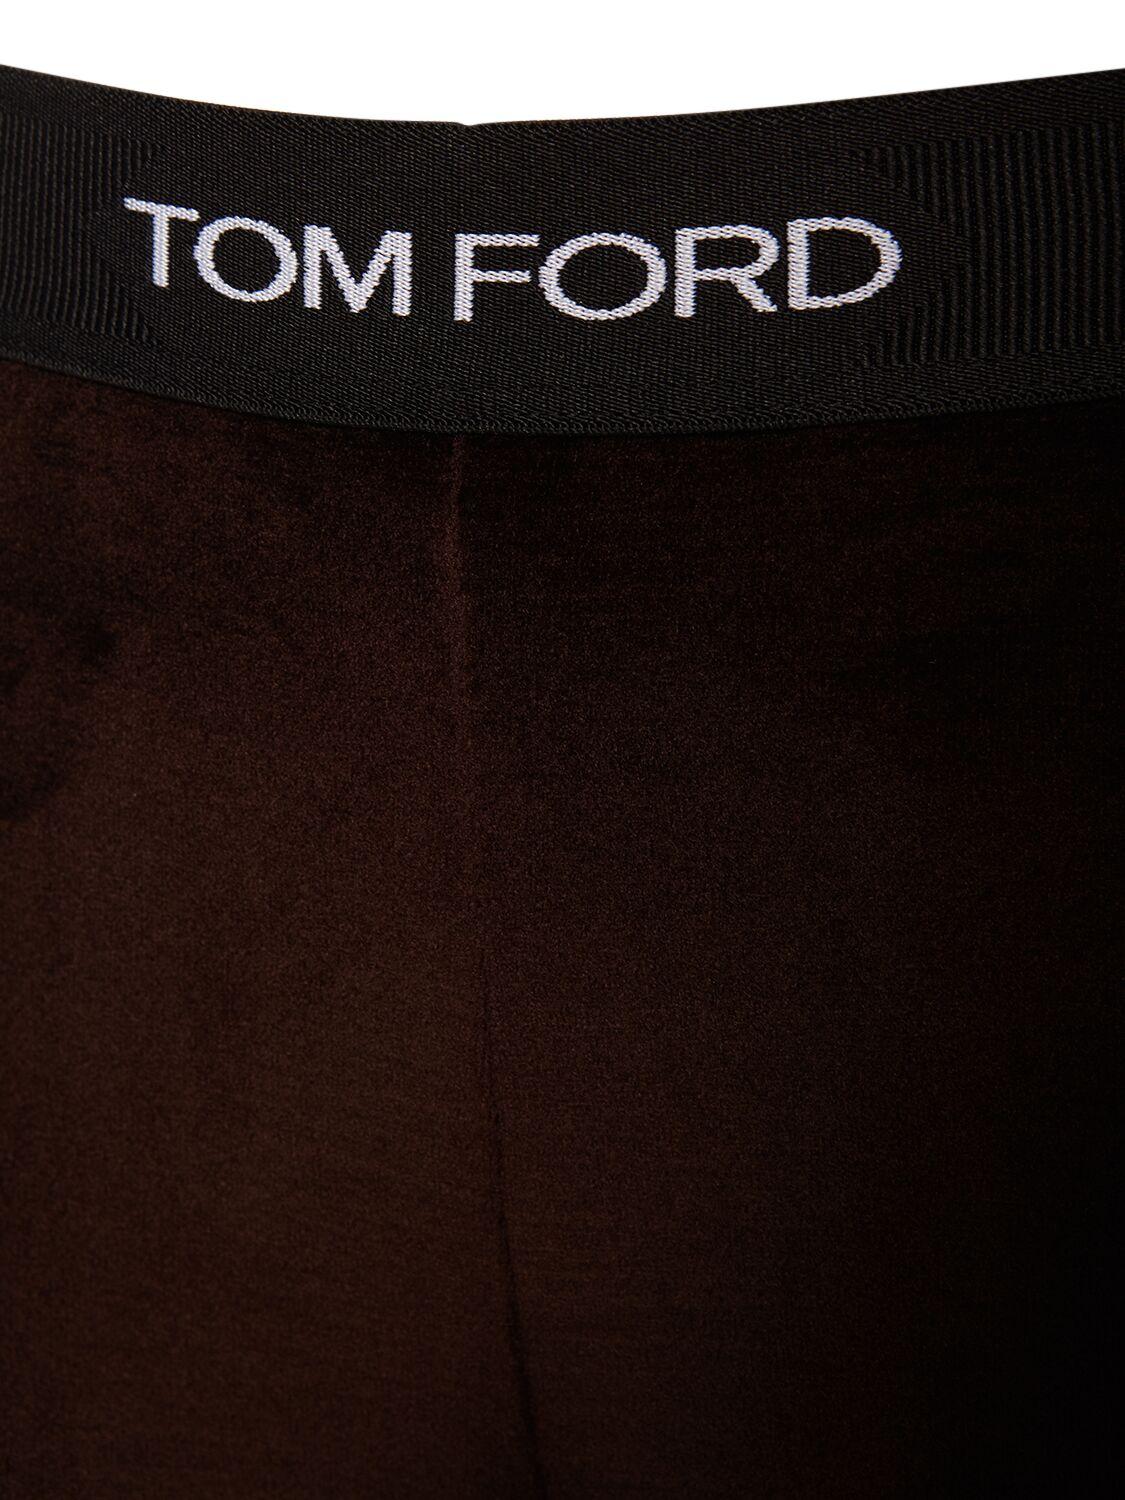 Tom Ford Velvet Logo Leggings - ShopStyle